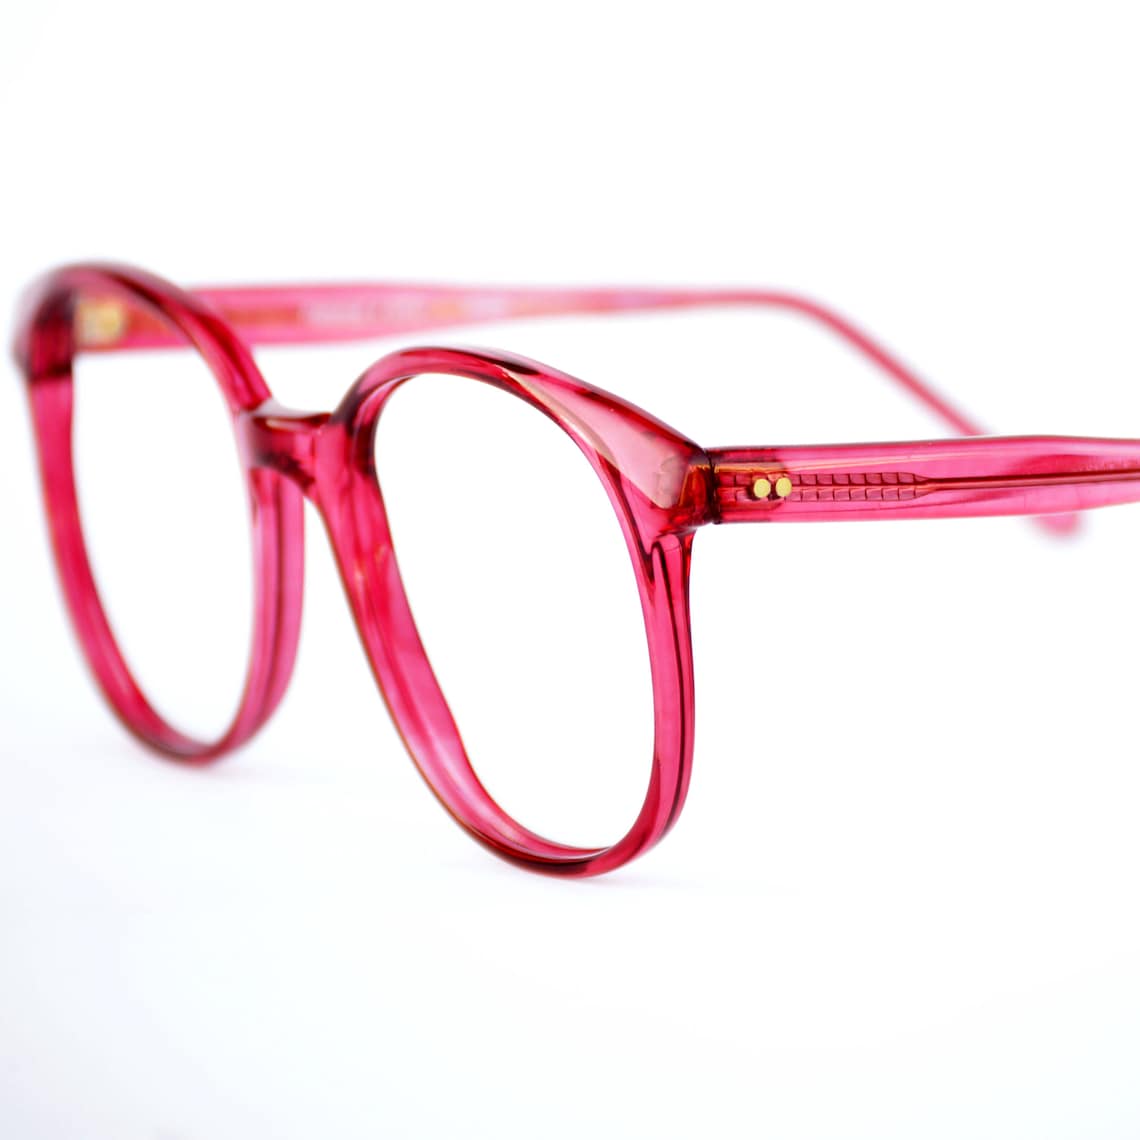 Red Plastic Oversized Eyeglasses Frames No Lenses Dark Red Etsy